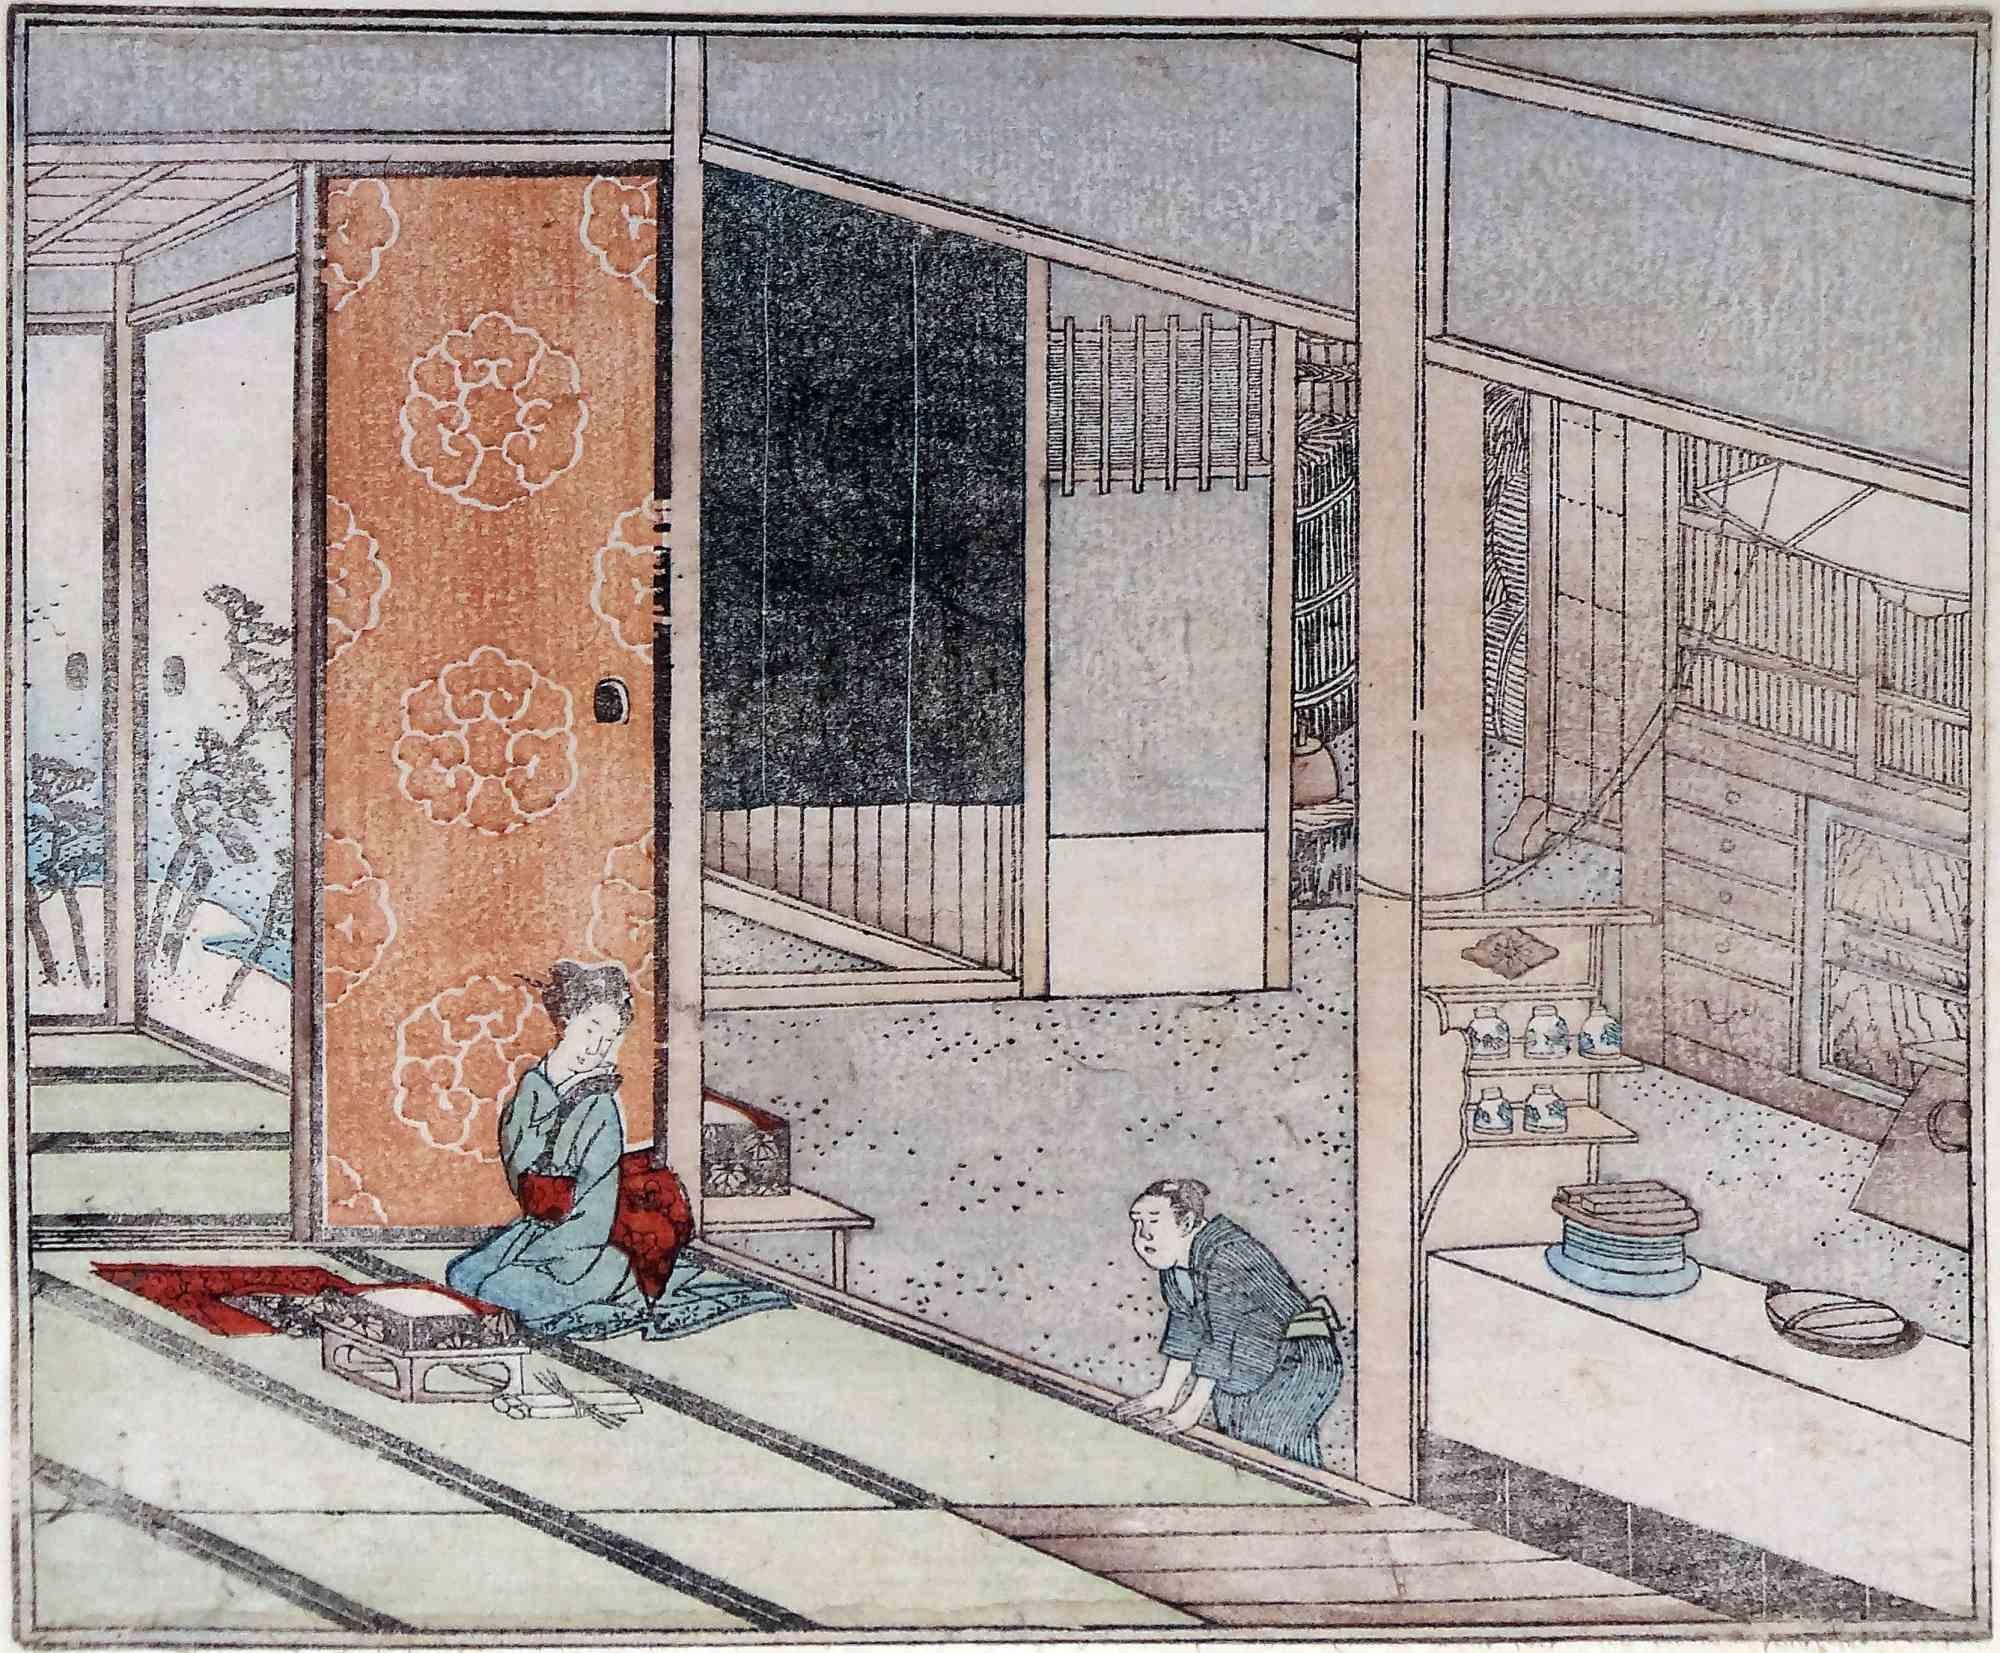 Dieser liebevolle Originaldruck ist das Werk des berühmten japanischen Meisters Utagawa Hiroshige (1797-1858).

Es stellt eine Alltagsszene mit zwei Personen in einer perspektivischen Innenansicht in sanften Farben dar.

Es ist in gutem Zustand und